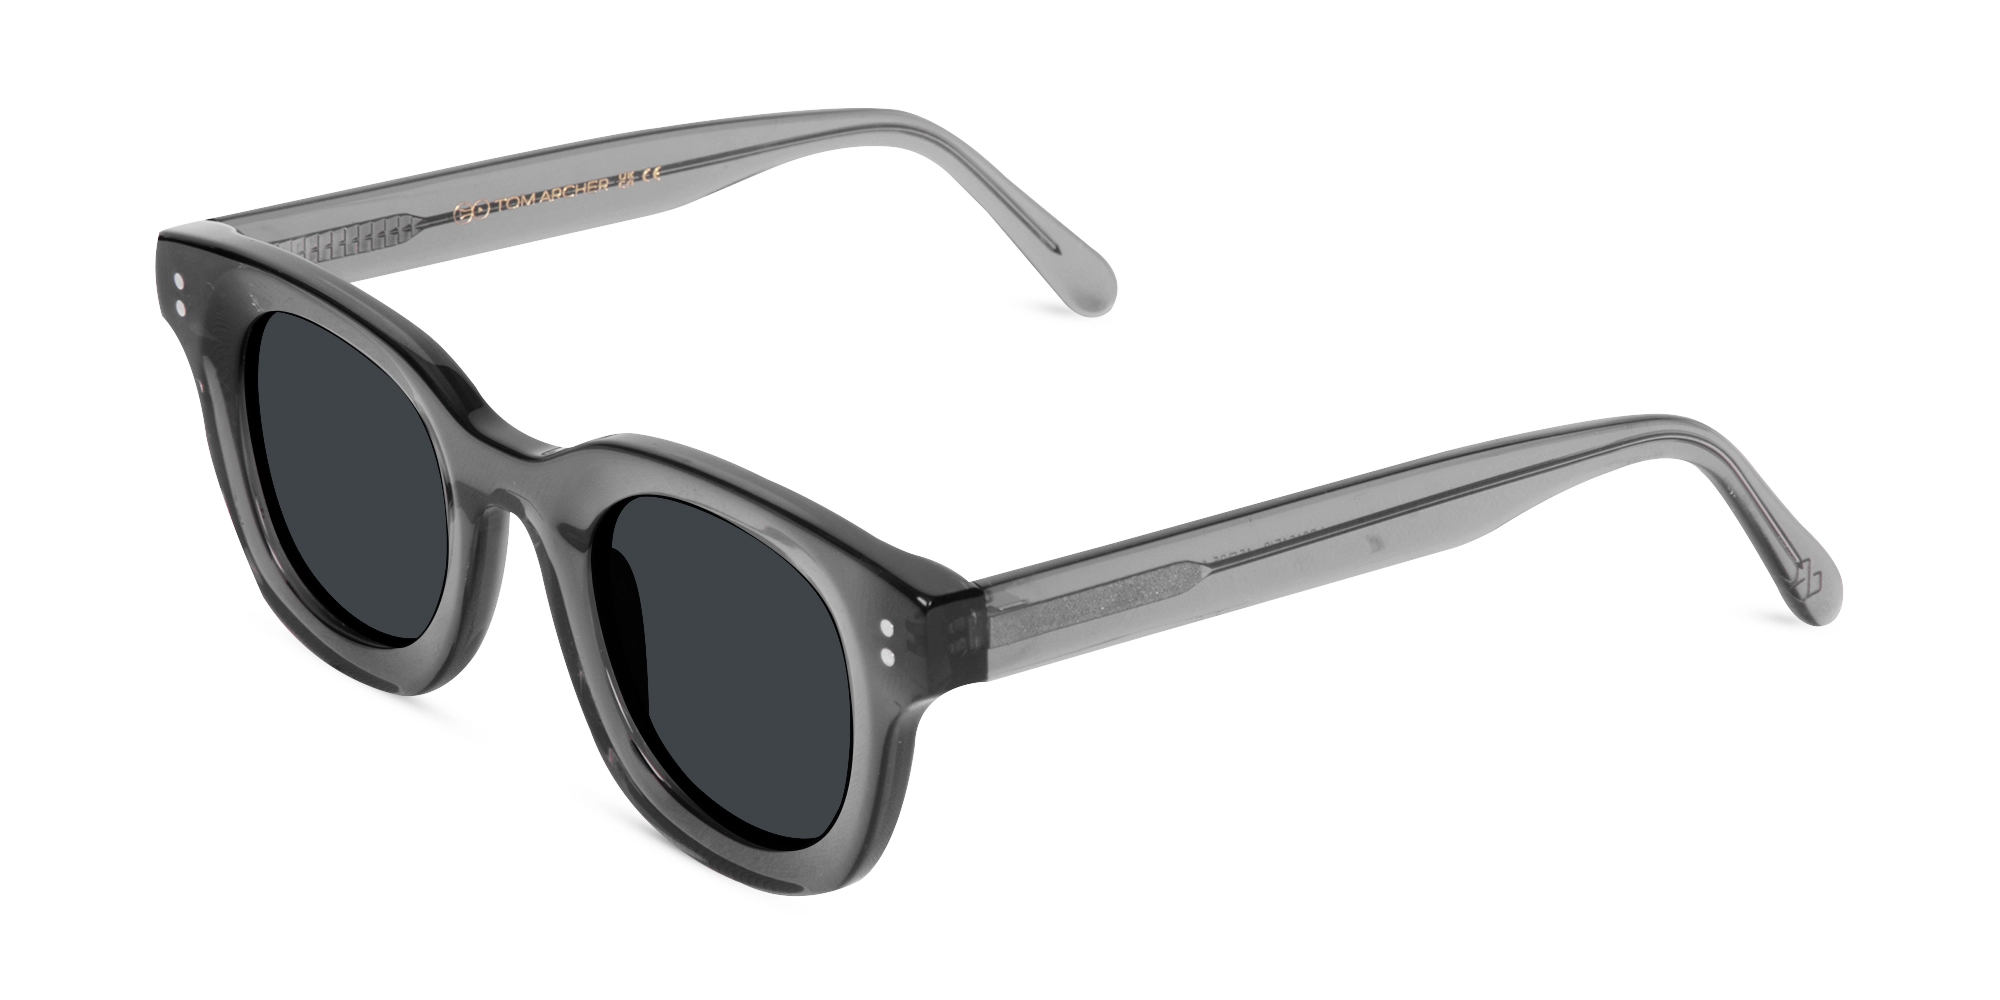 Sunglasses Grey Frame